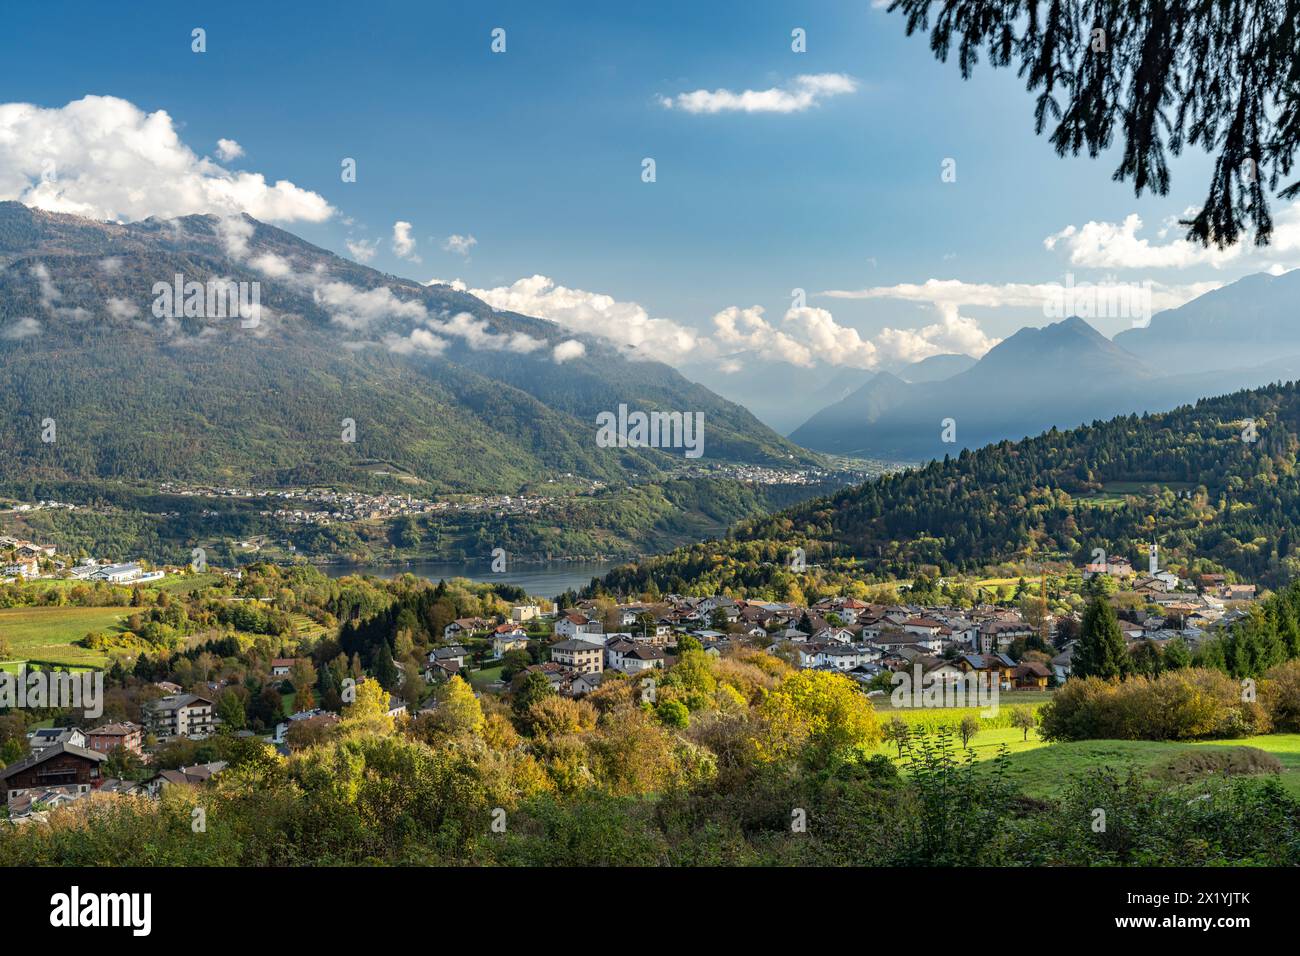 Vattaro, Lake Caldonazzo and the Valsugana landscape, Trentino, Italy, Europe Stock Photo